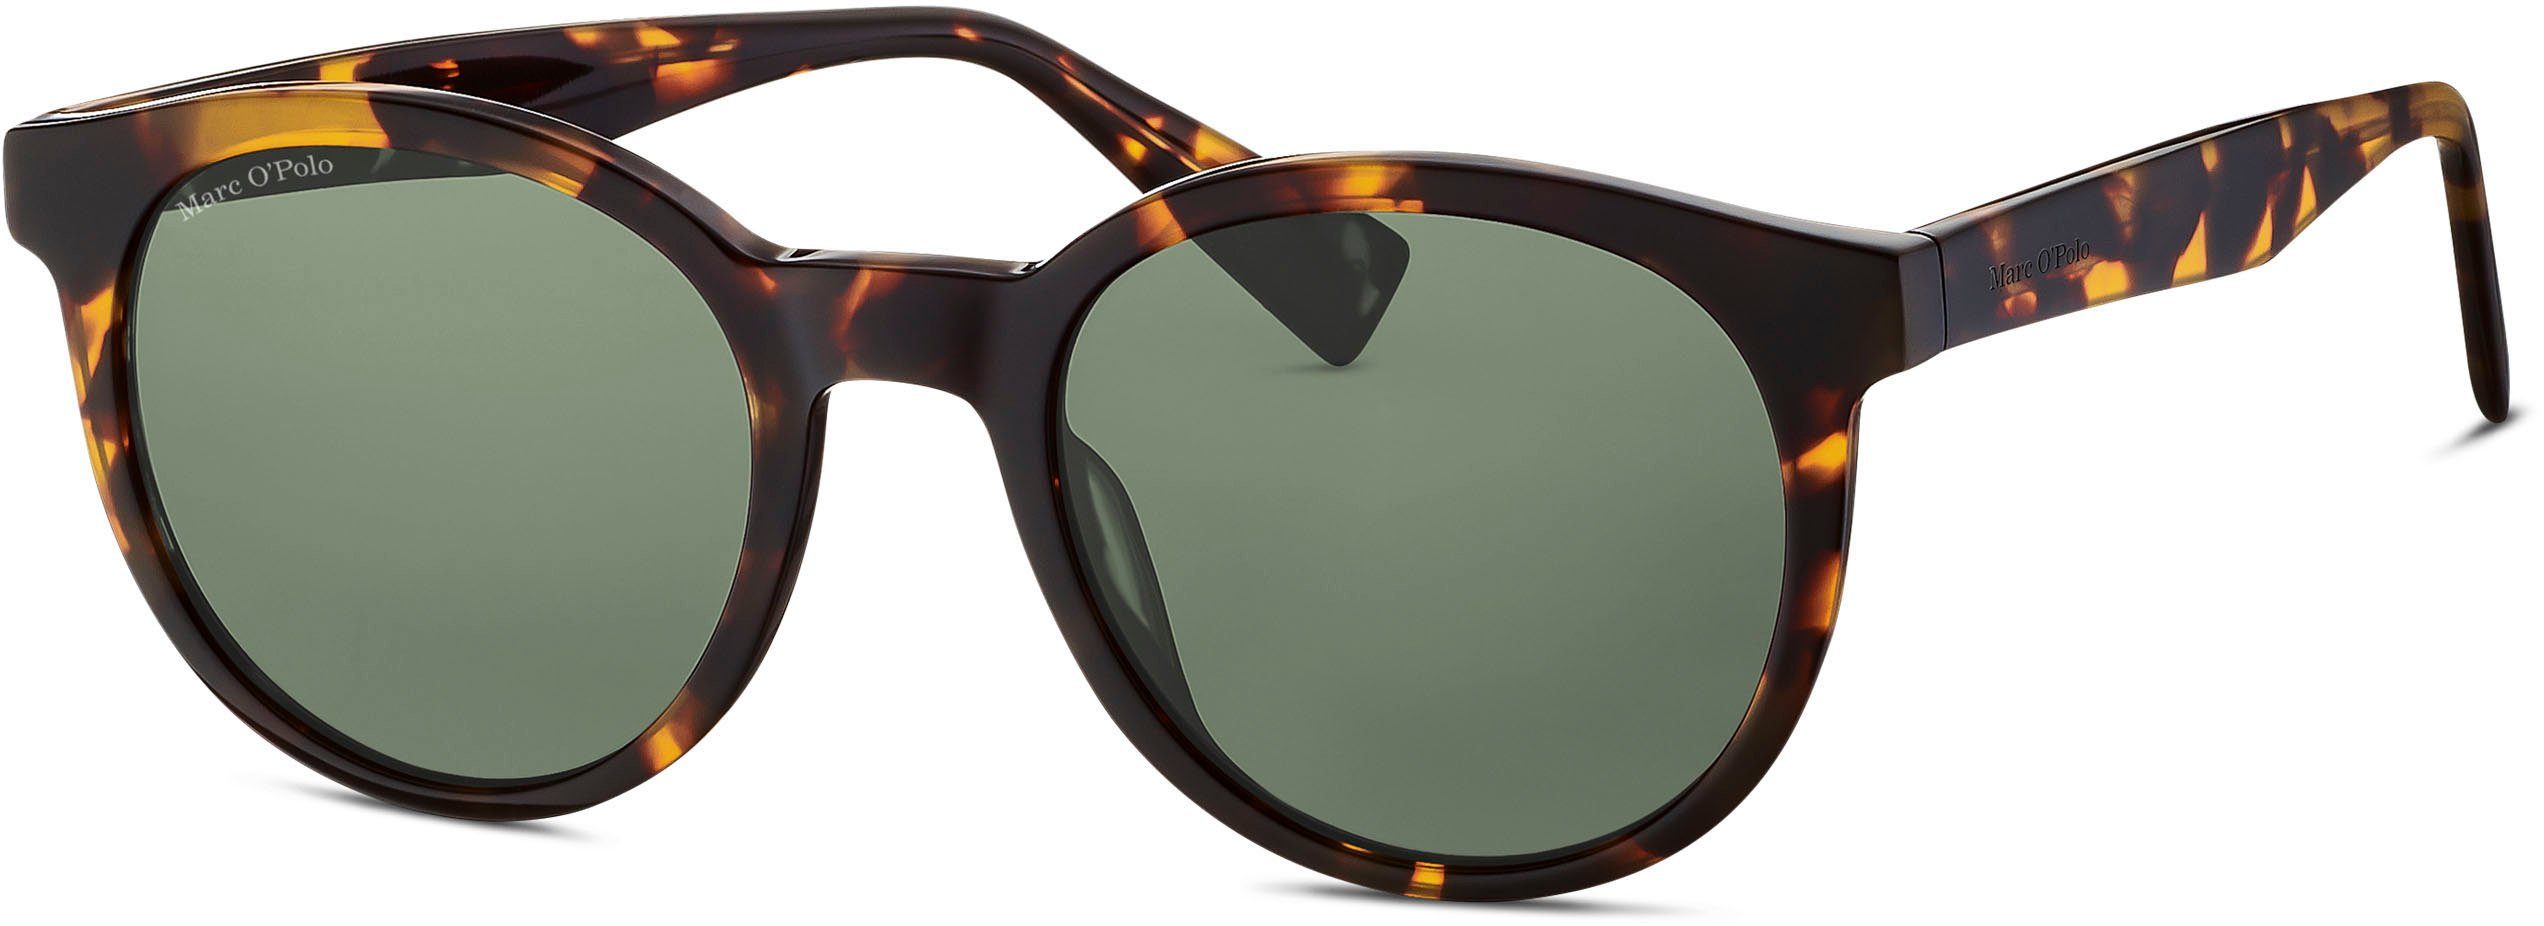 506185 Marc Modell Panto-Form O'Polo braun-grün Sonnenbrille